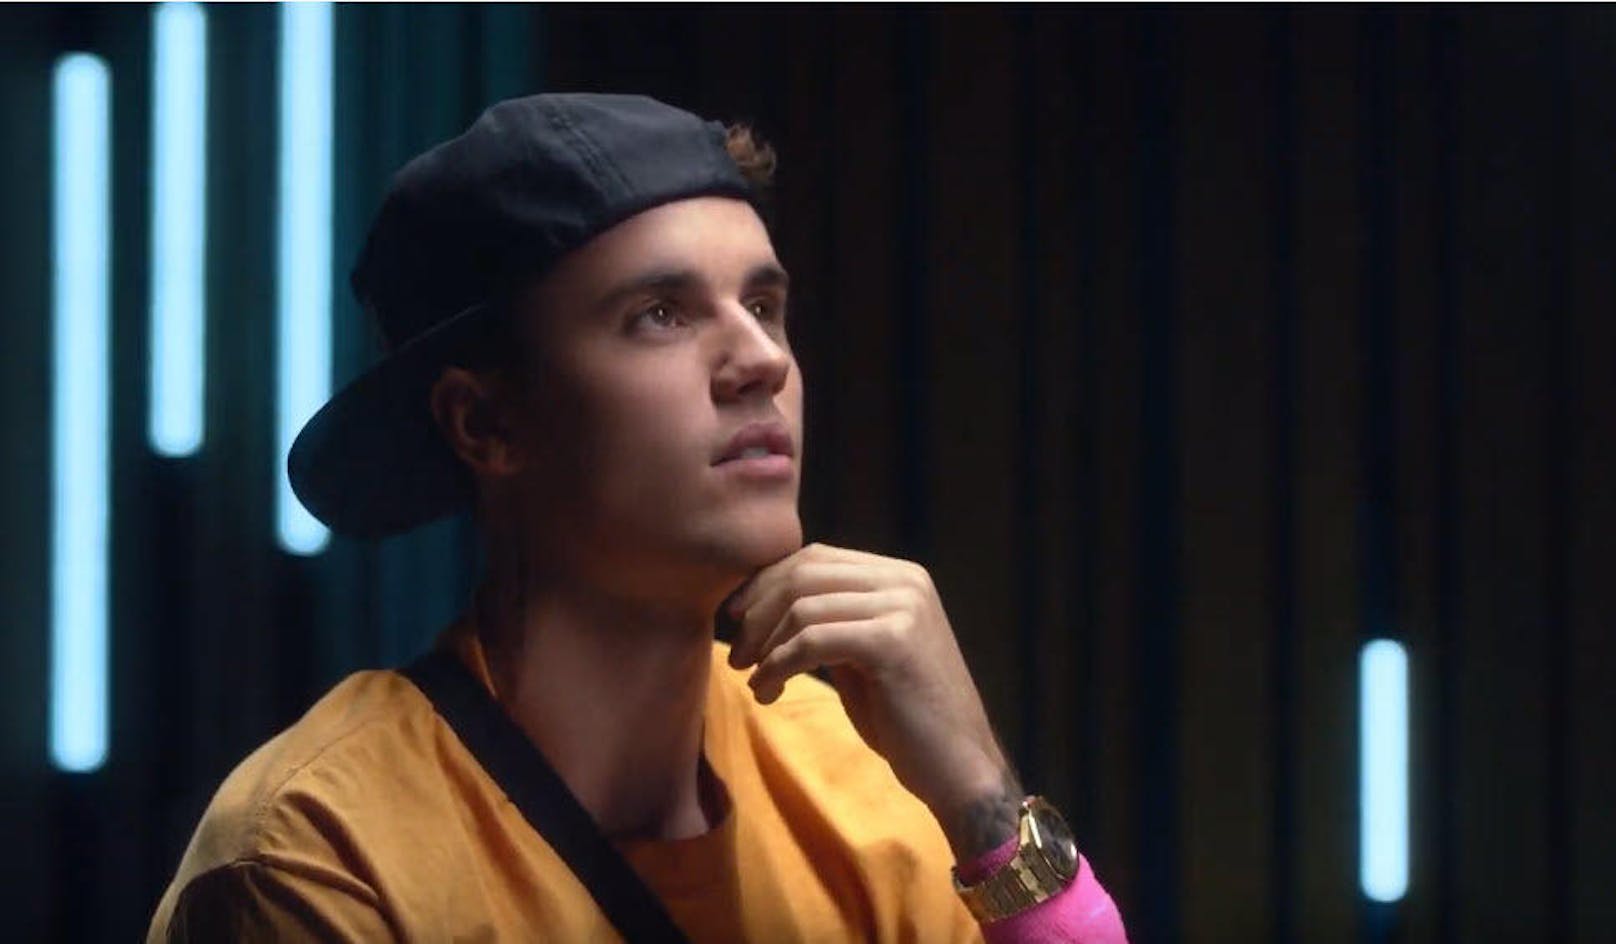 <i>"Ich glaube, wir haben alle mit etwas zu kämpfen"</i>, <b>Justin Bieber</b> in Denkerpose.